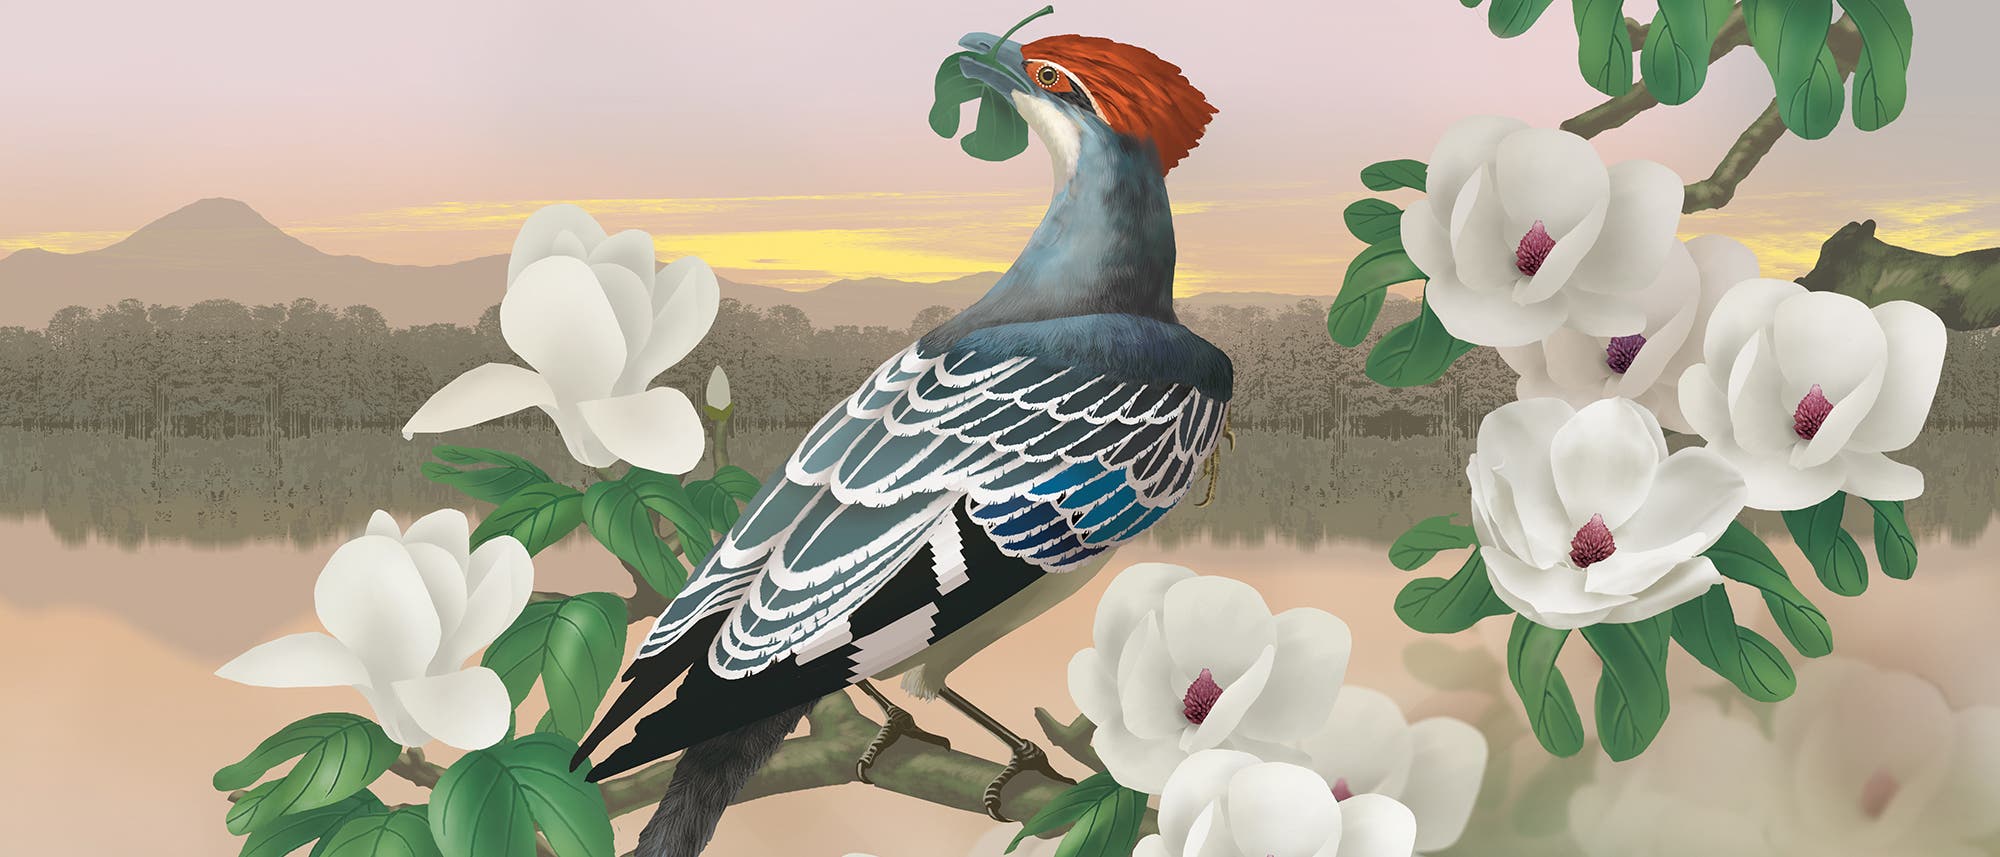 Diese Illustration zeigt eine Rekonstruktion von Jeholornis, einem frühen Vogel, der auf einem Ast sitzt und Blätter frisst.